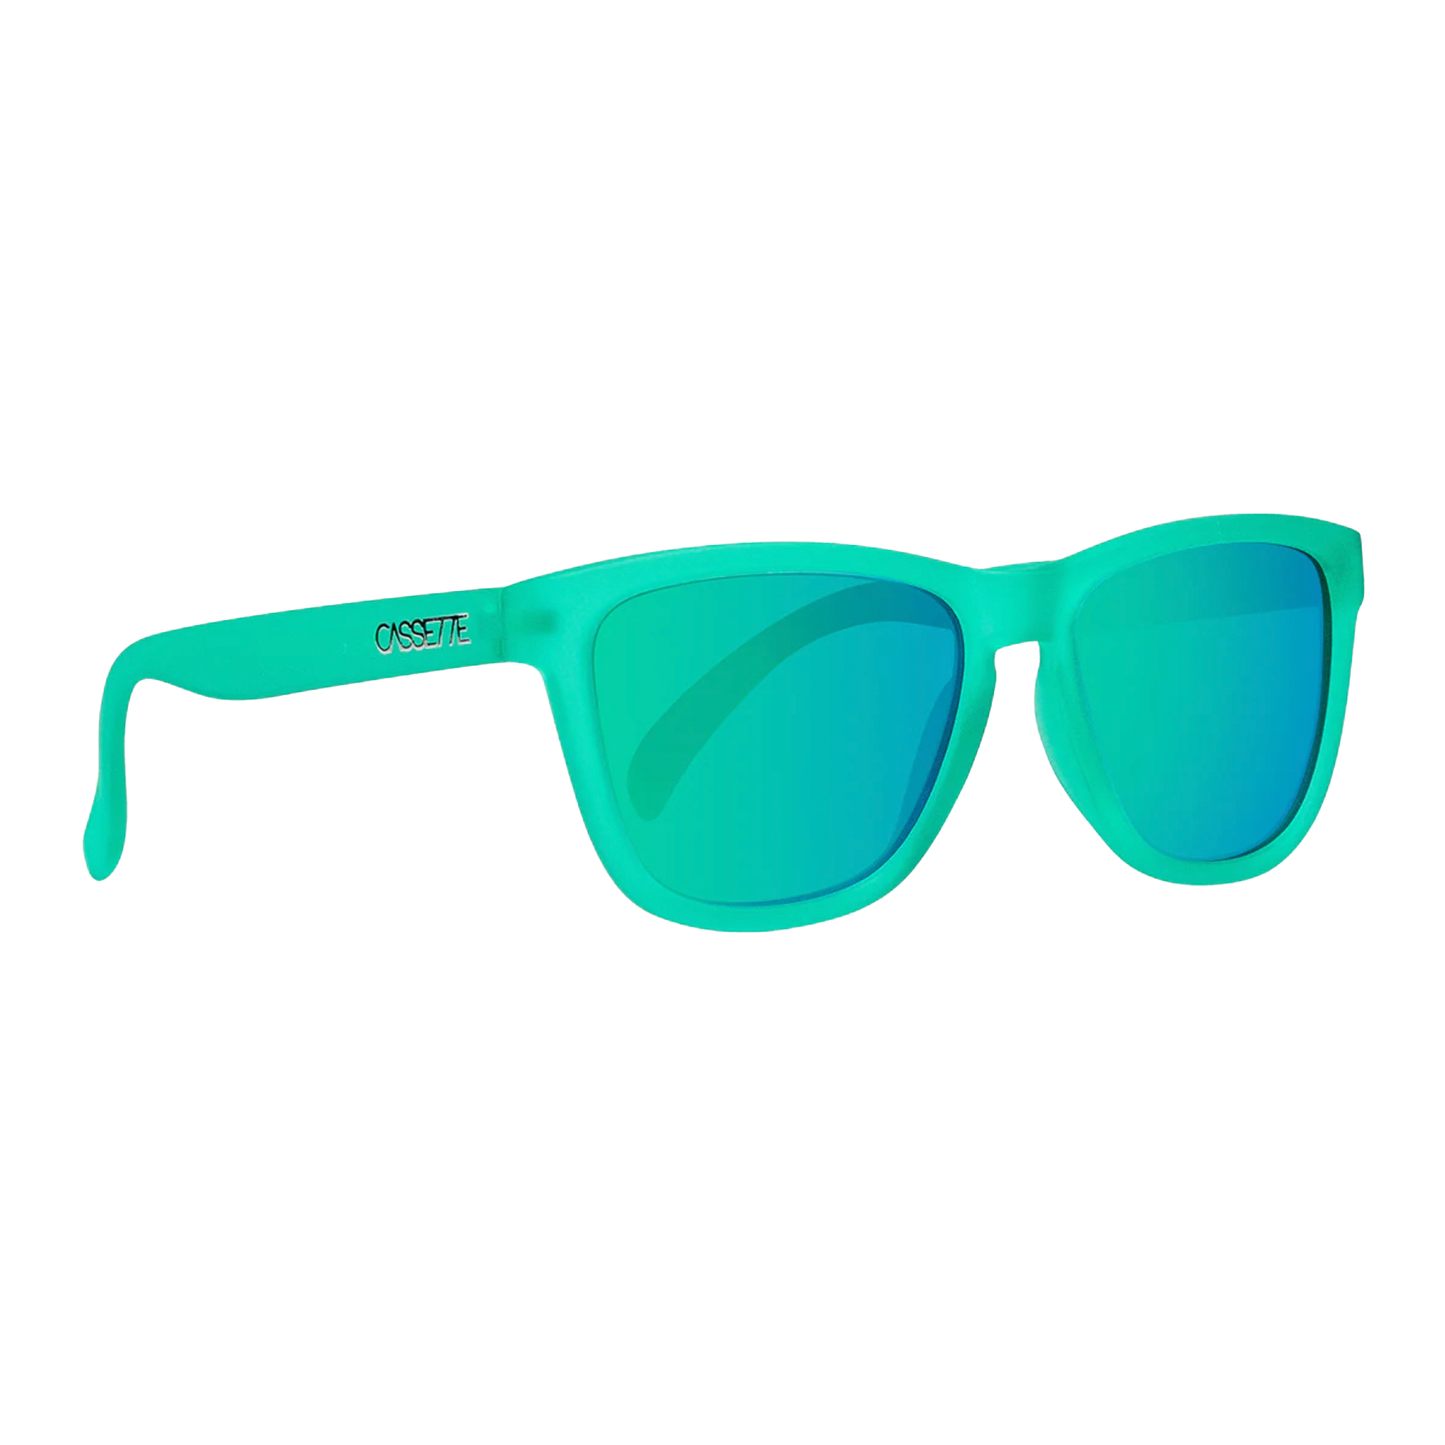 Cassette Easy Livin' Sunglasses - Green Heat / Green Mirror Lens